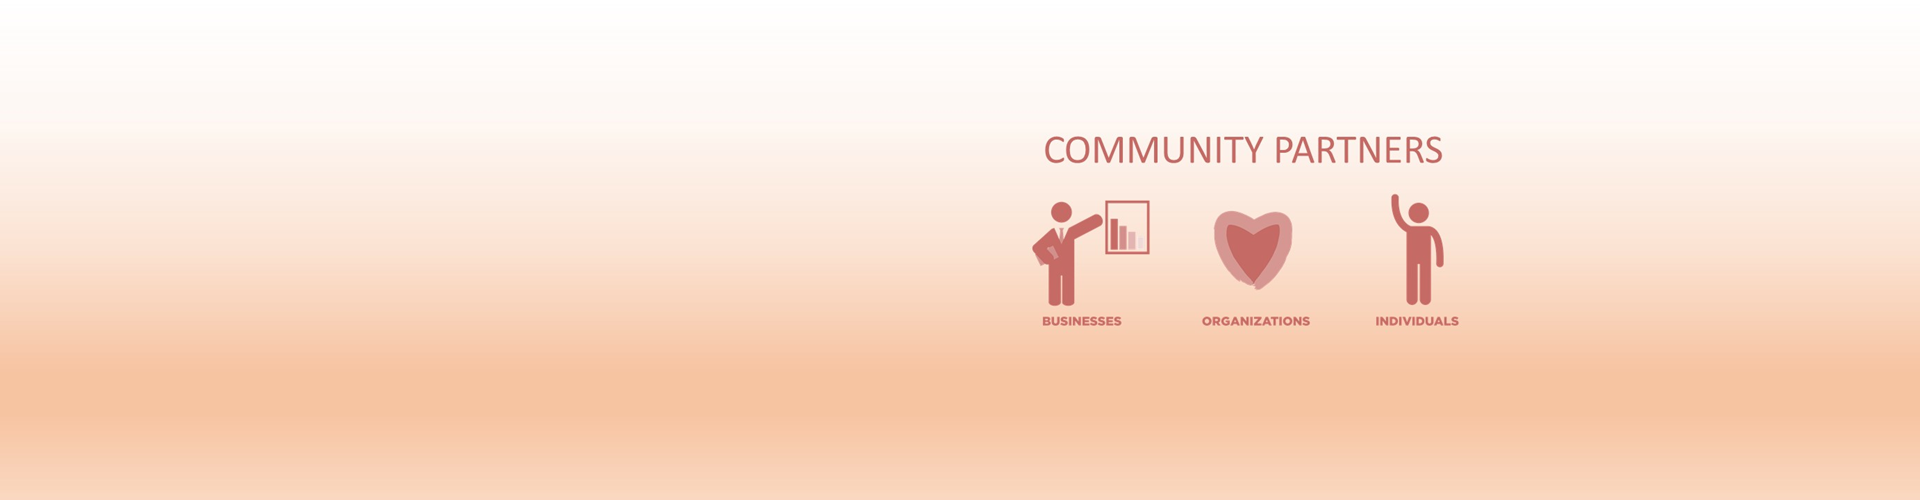 Community Partner Slider image